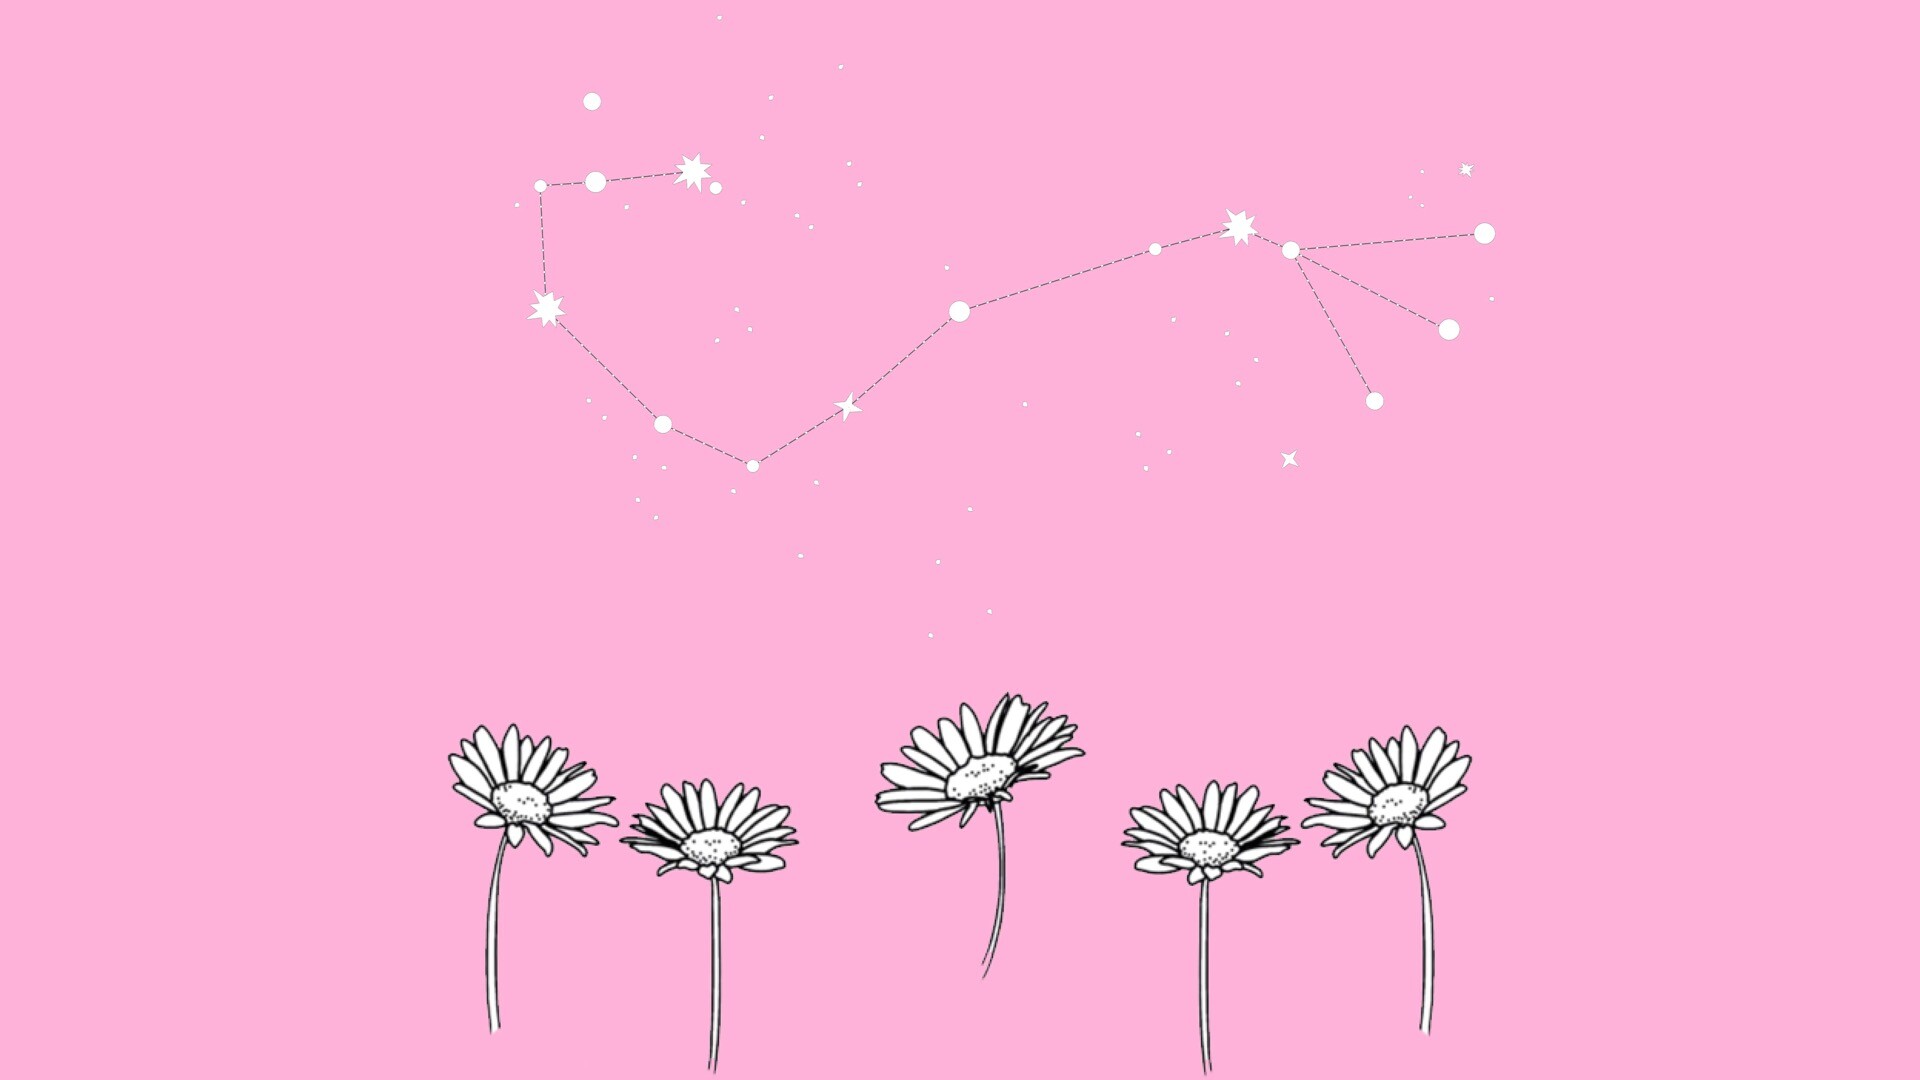 5k高清粉色动态壁纸分享,壁纸非常的精致唯美,有可爱的花朵,希望你们